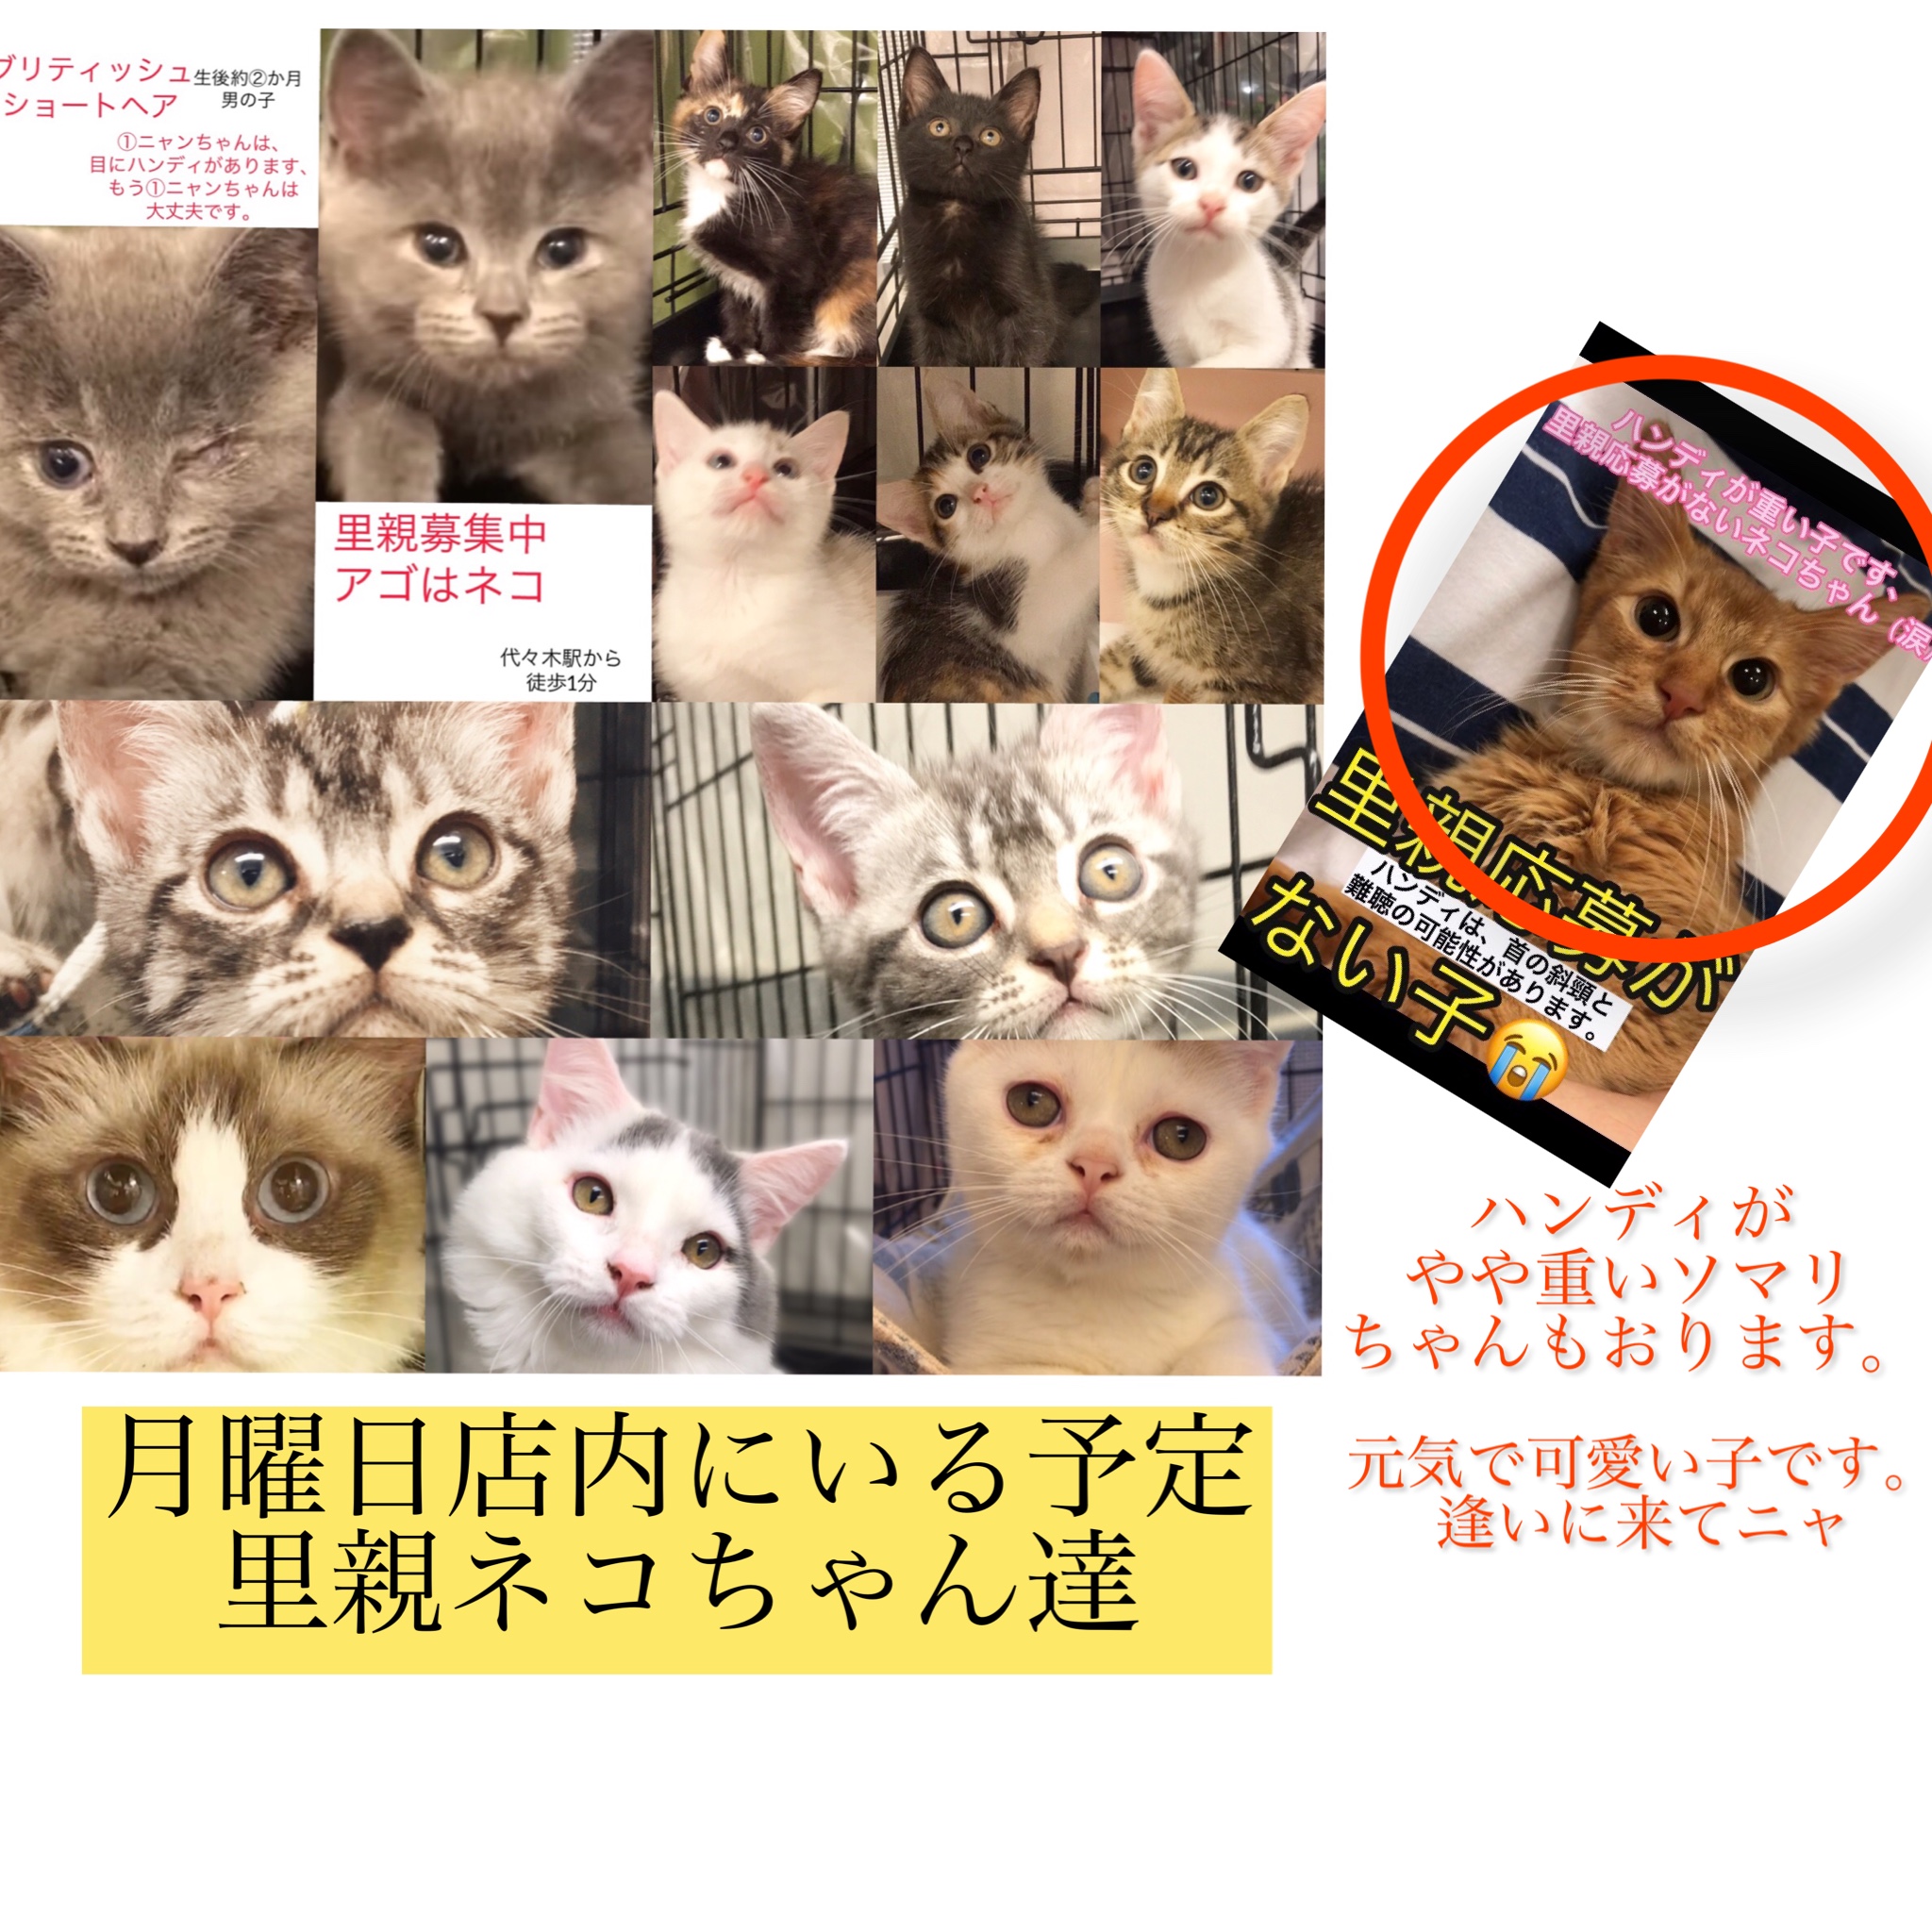 新版 cat'sニャー様 専用 asakusa.sub.jp